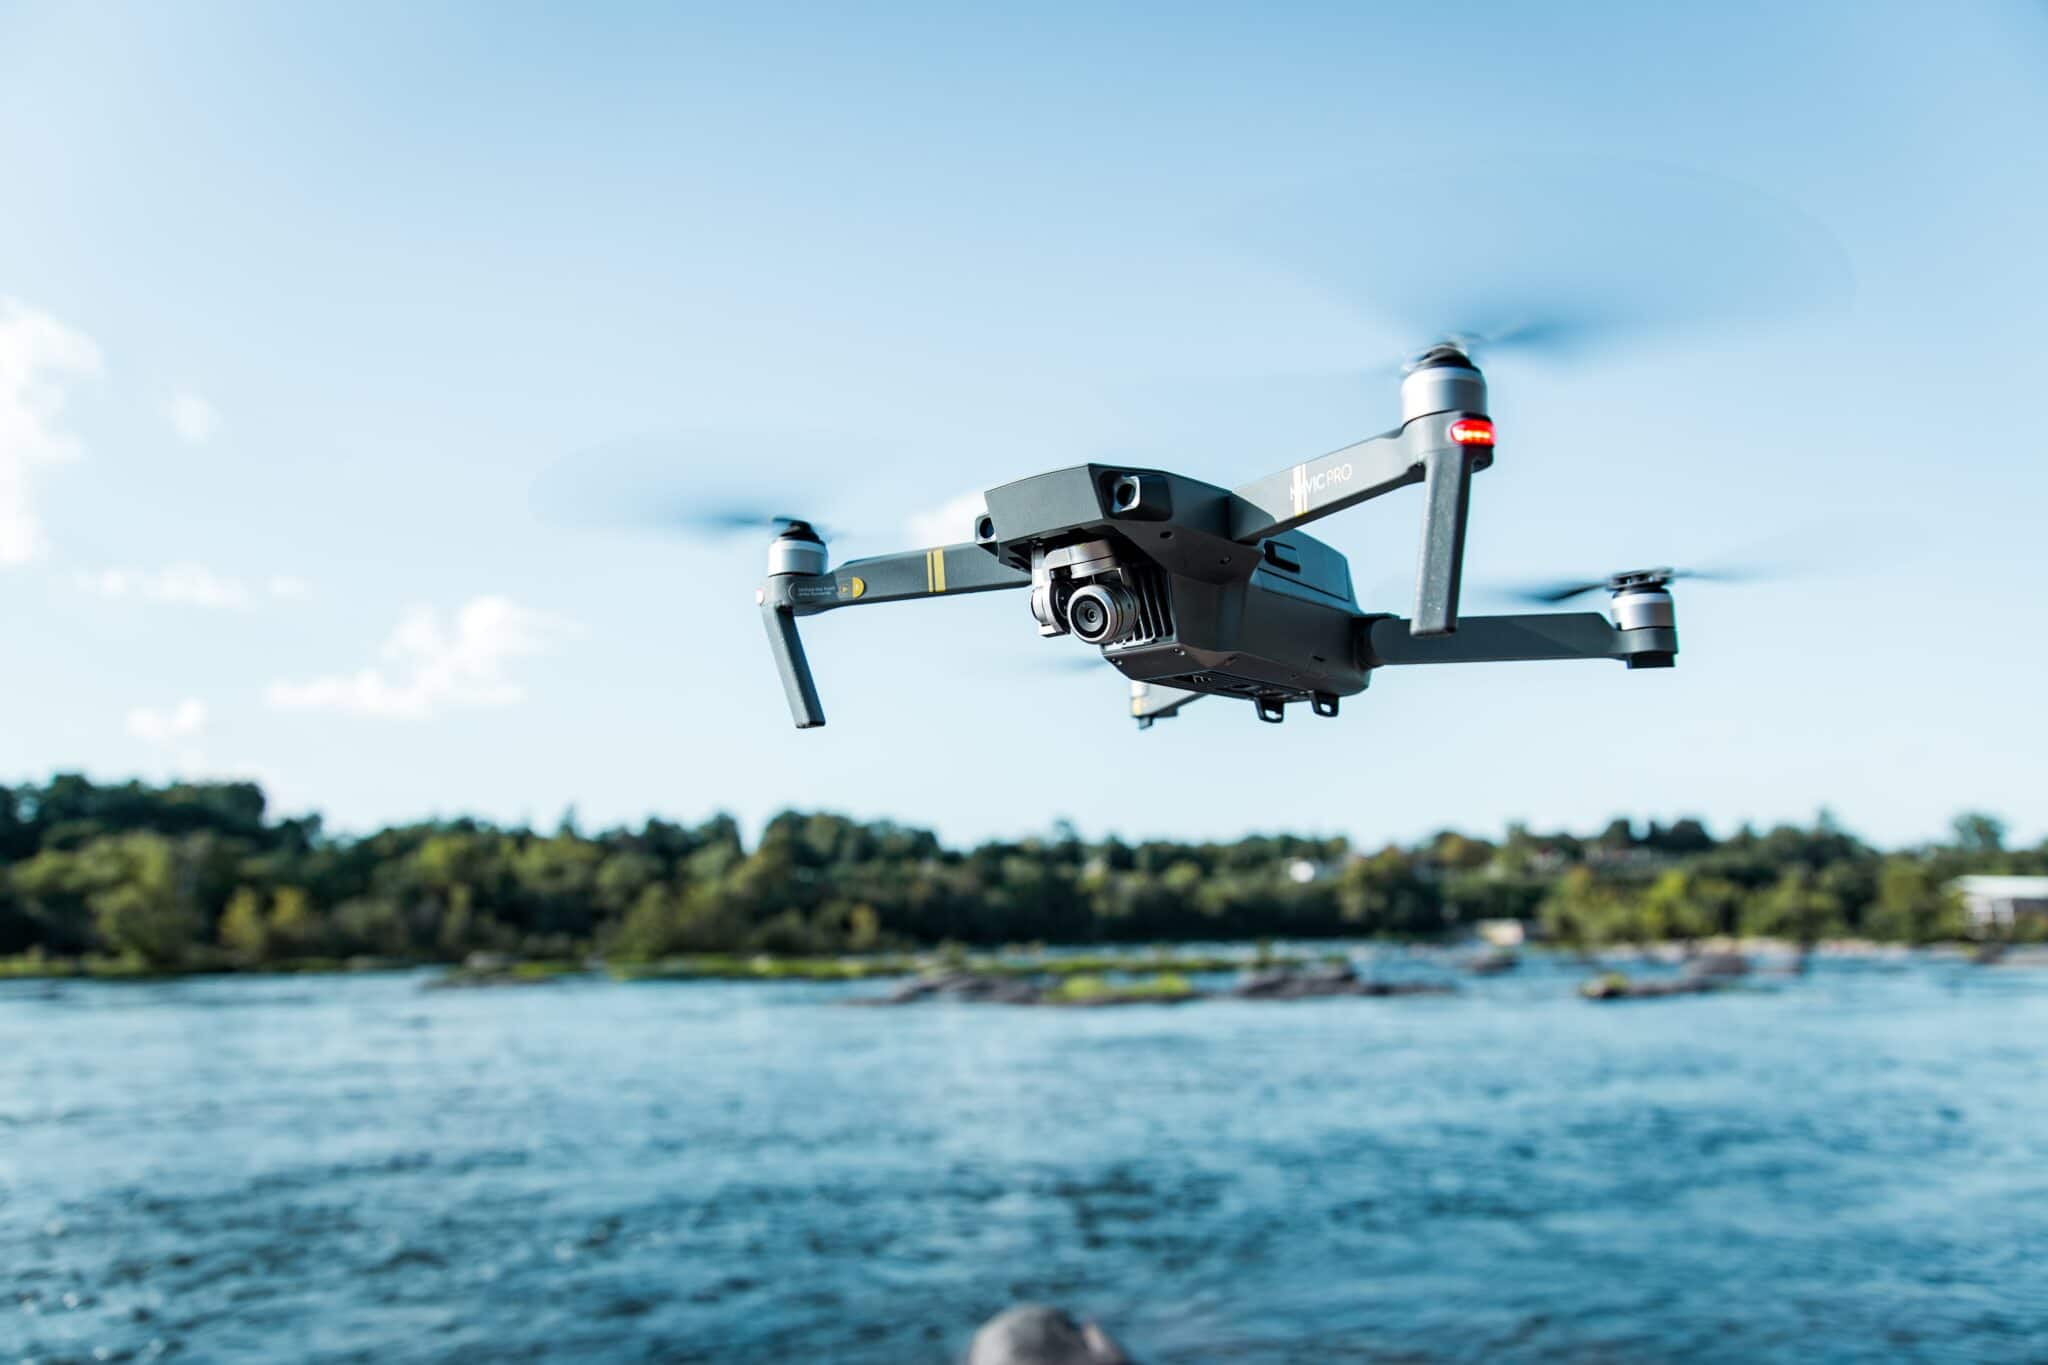 Comment stabiliser un drone en vol ?